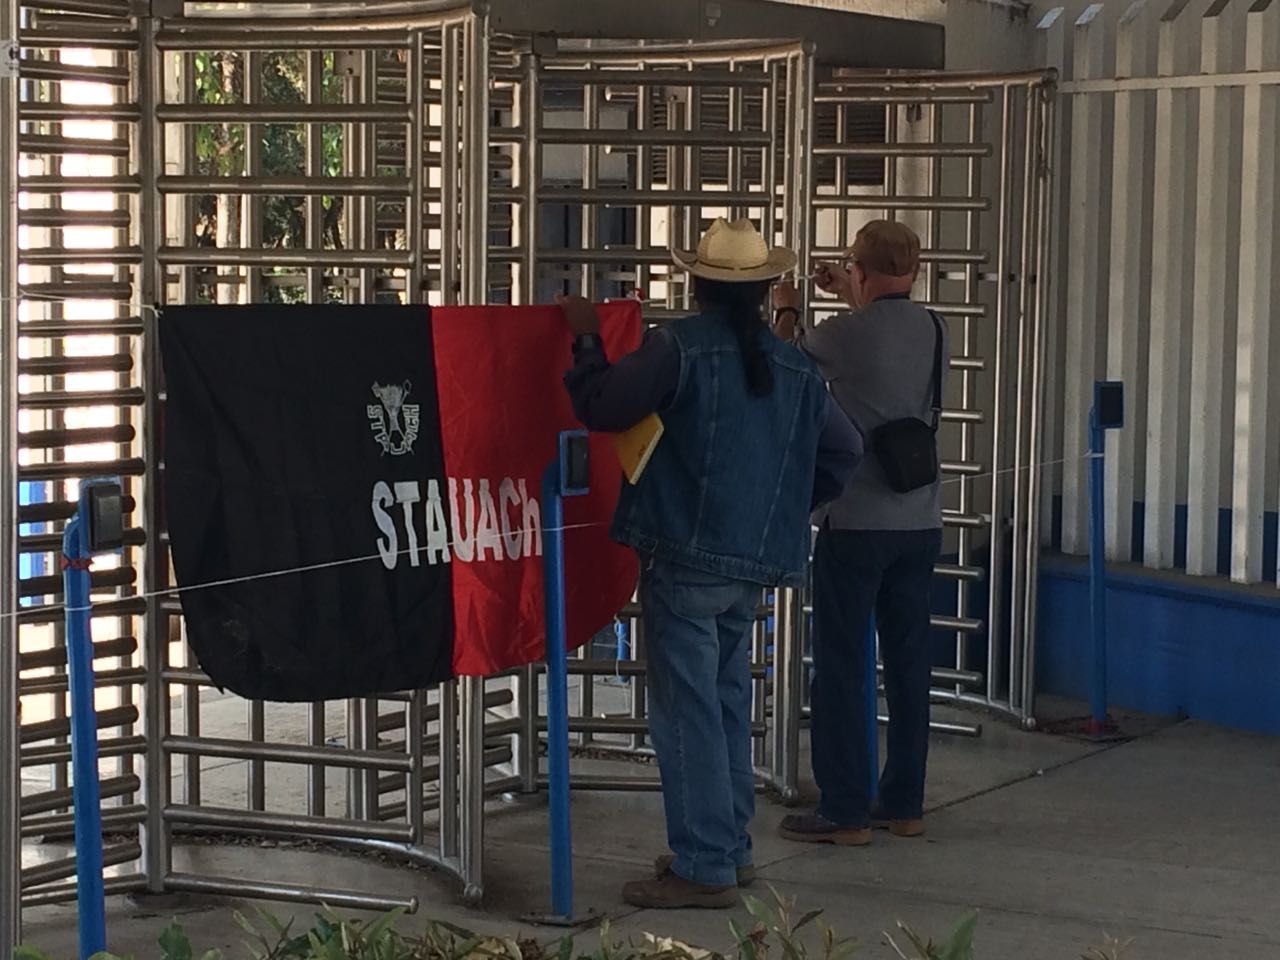 Académicos de la Universidad Autónoma Chapingo (STAUACh) estalla en huelga.

